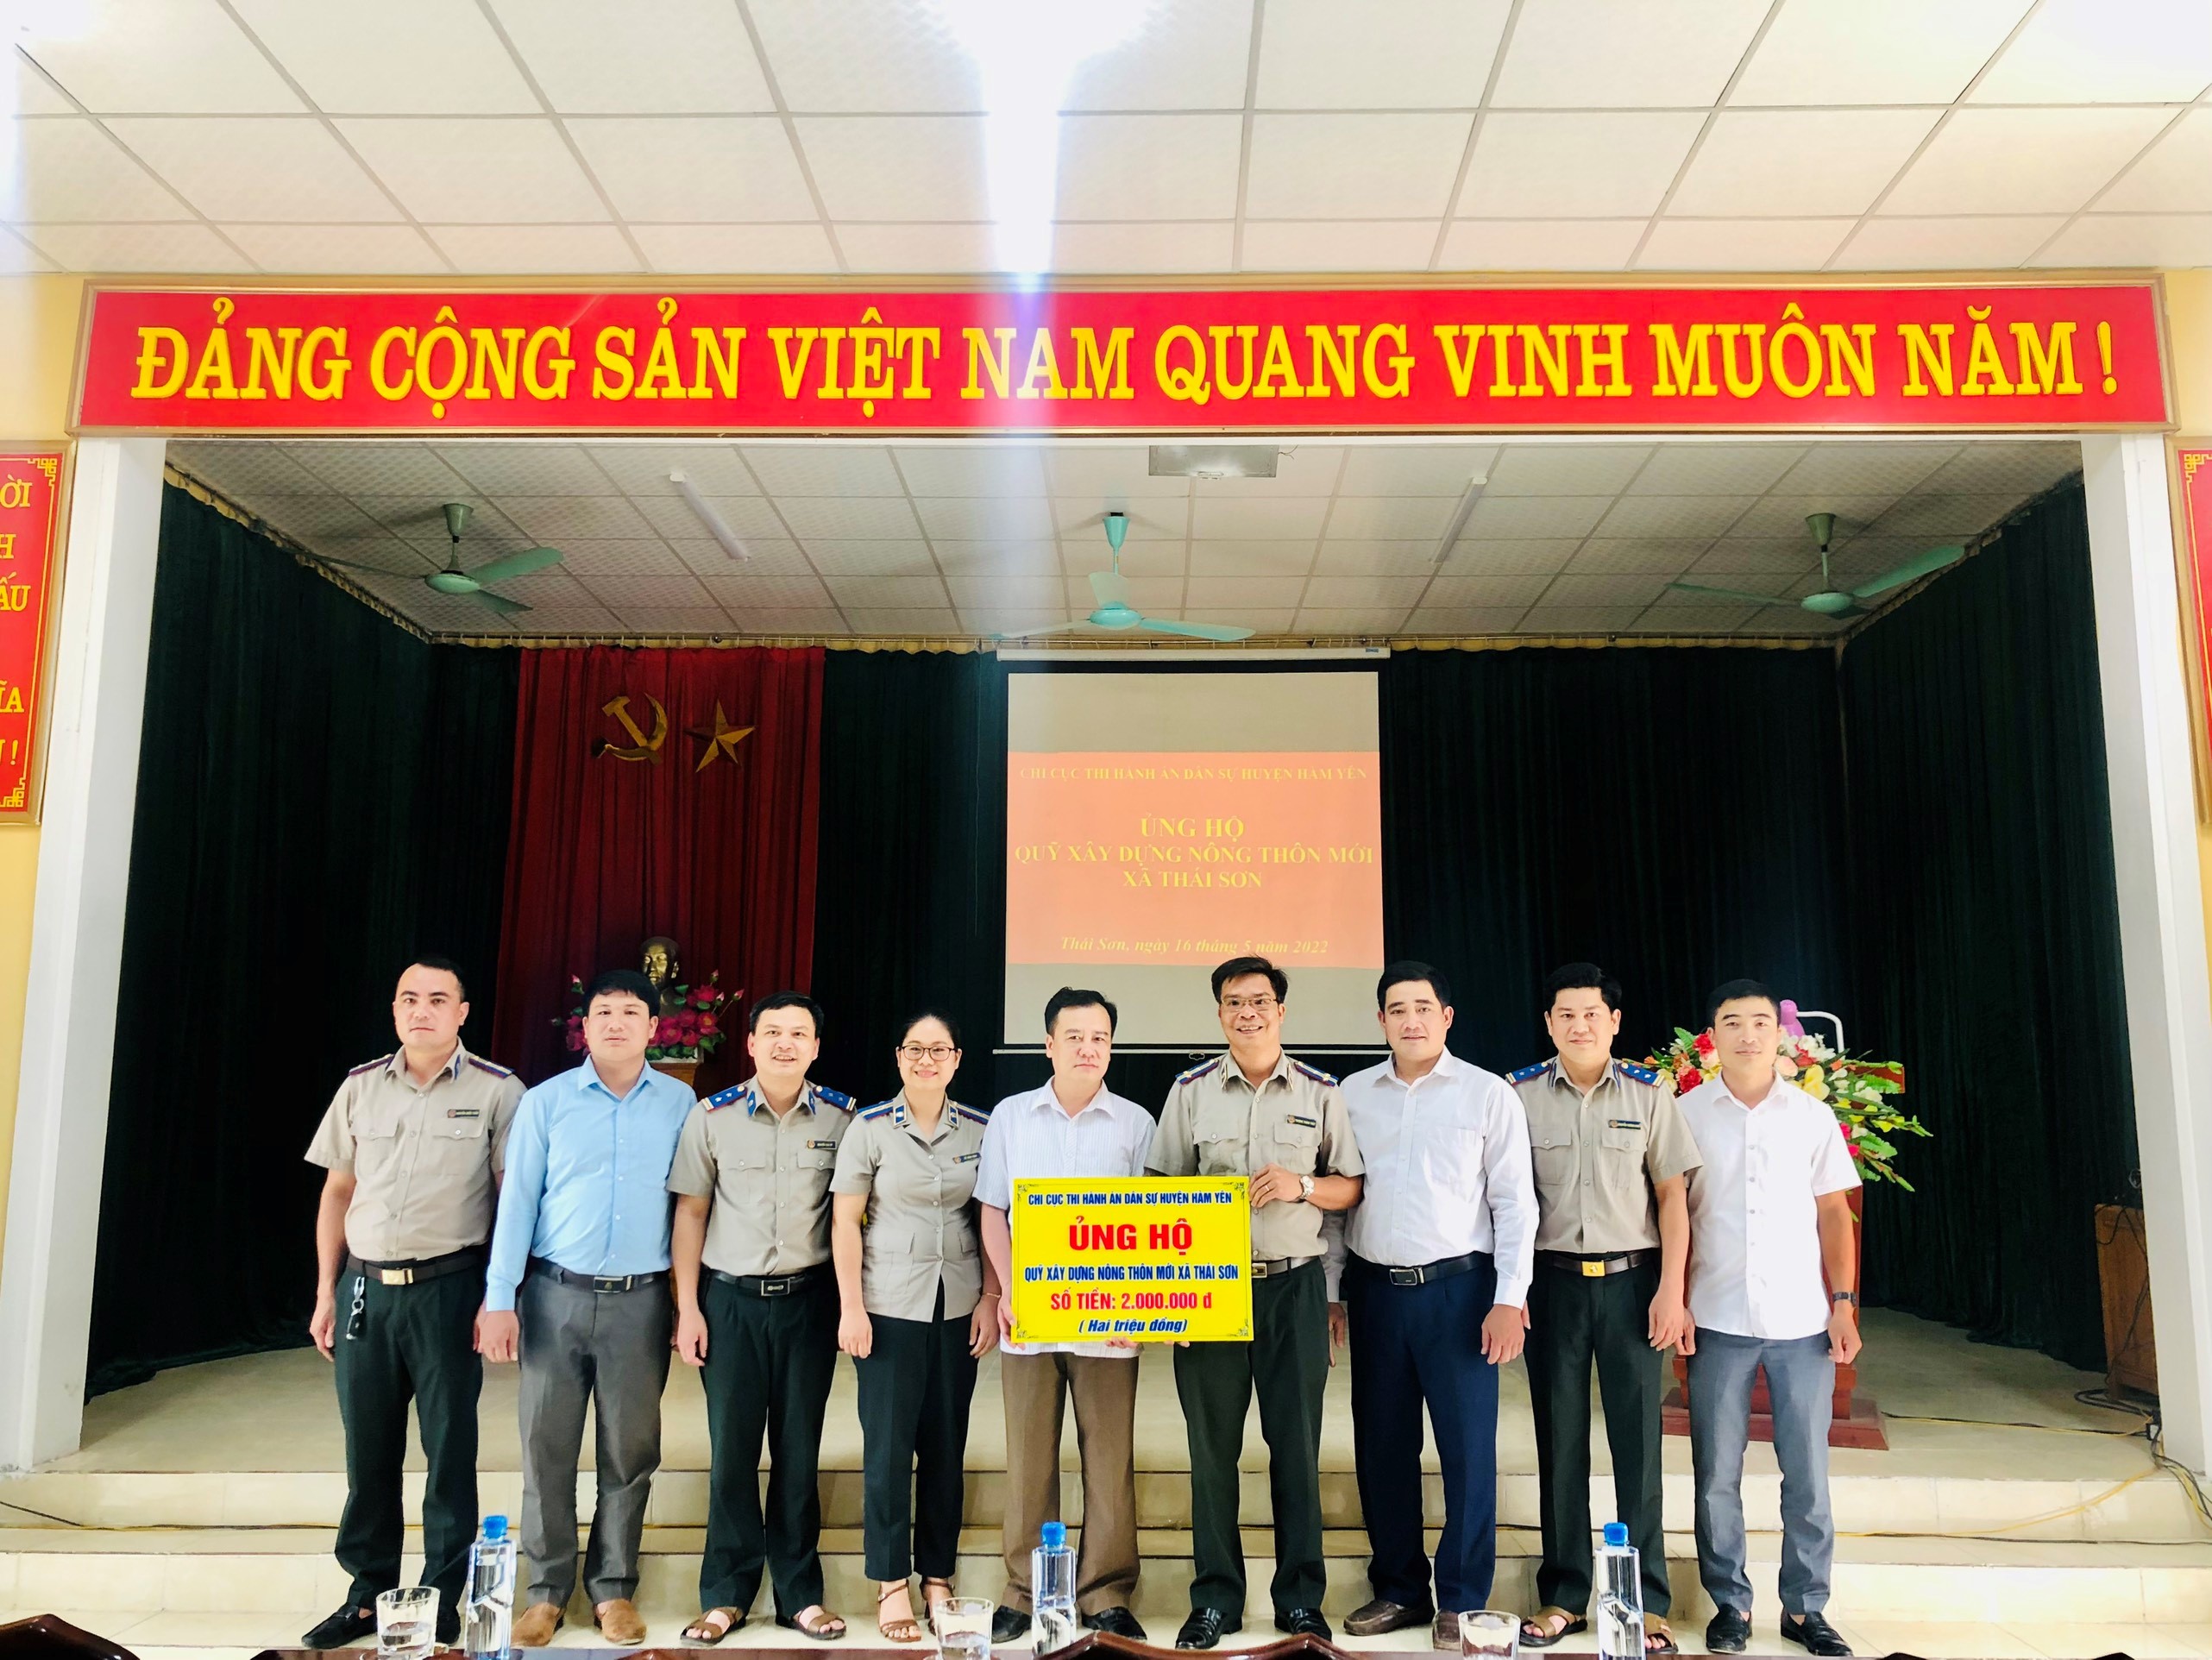 Chi cục THADS huyện Hàm Yên tích cực thực hiện “Phong trào thi đua Ngành Tư pháp chung sức góp phần xây dựng nông thôn mới”